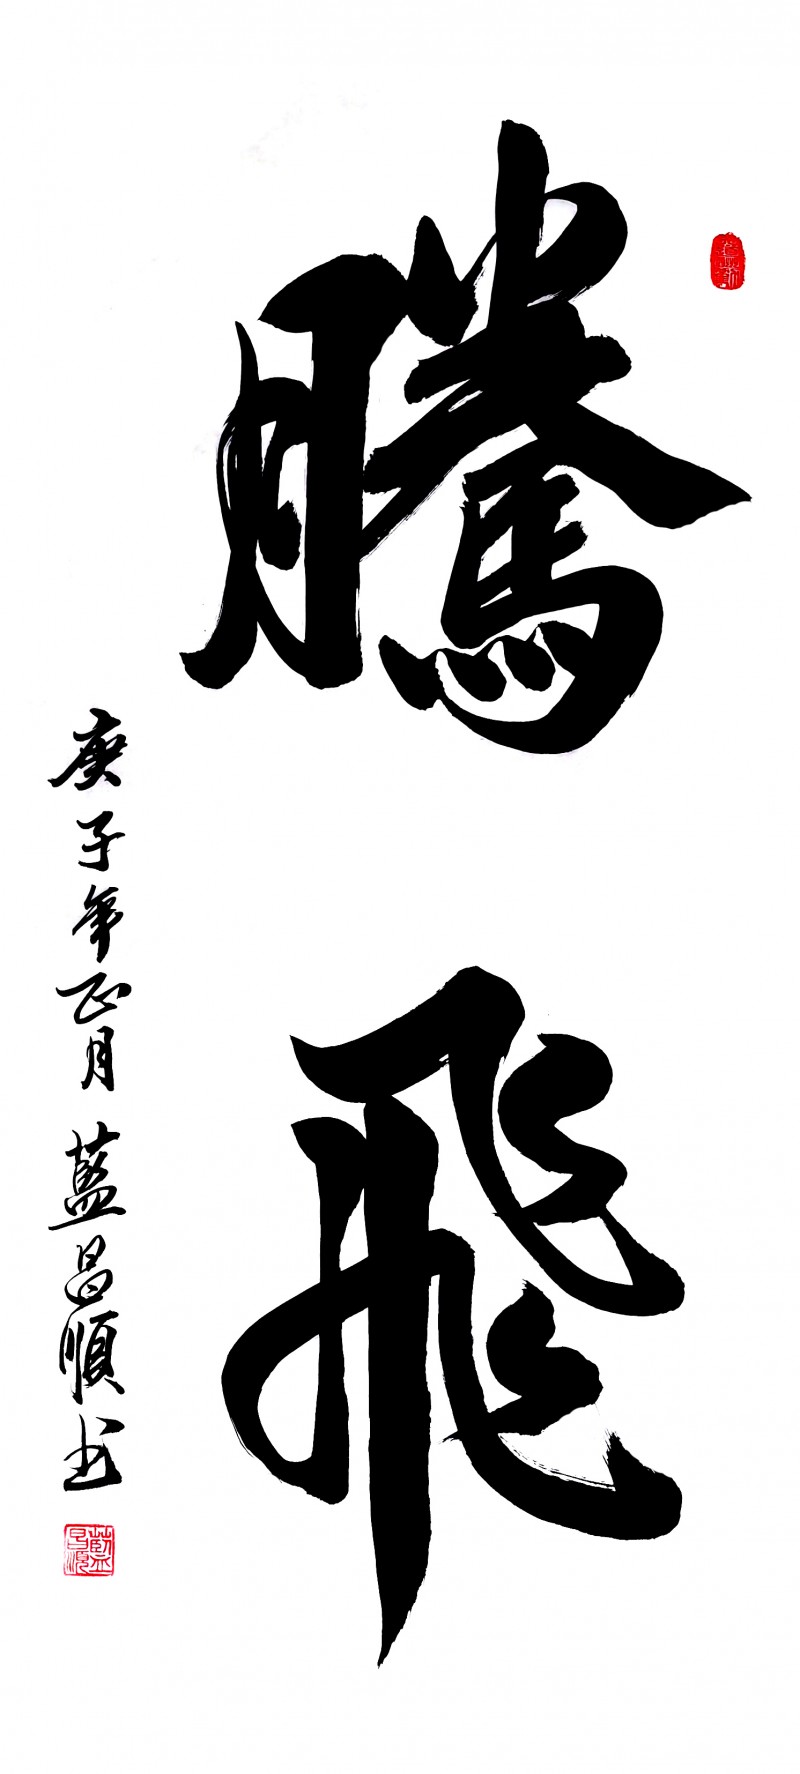 中国楹联学会中宣盛世文化艺术交流中心书画风采展示——蓝昌顺